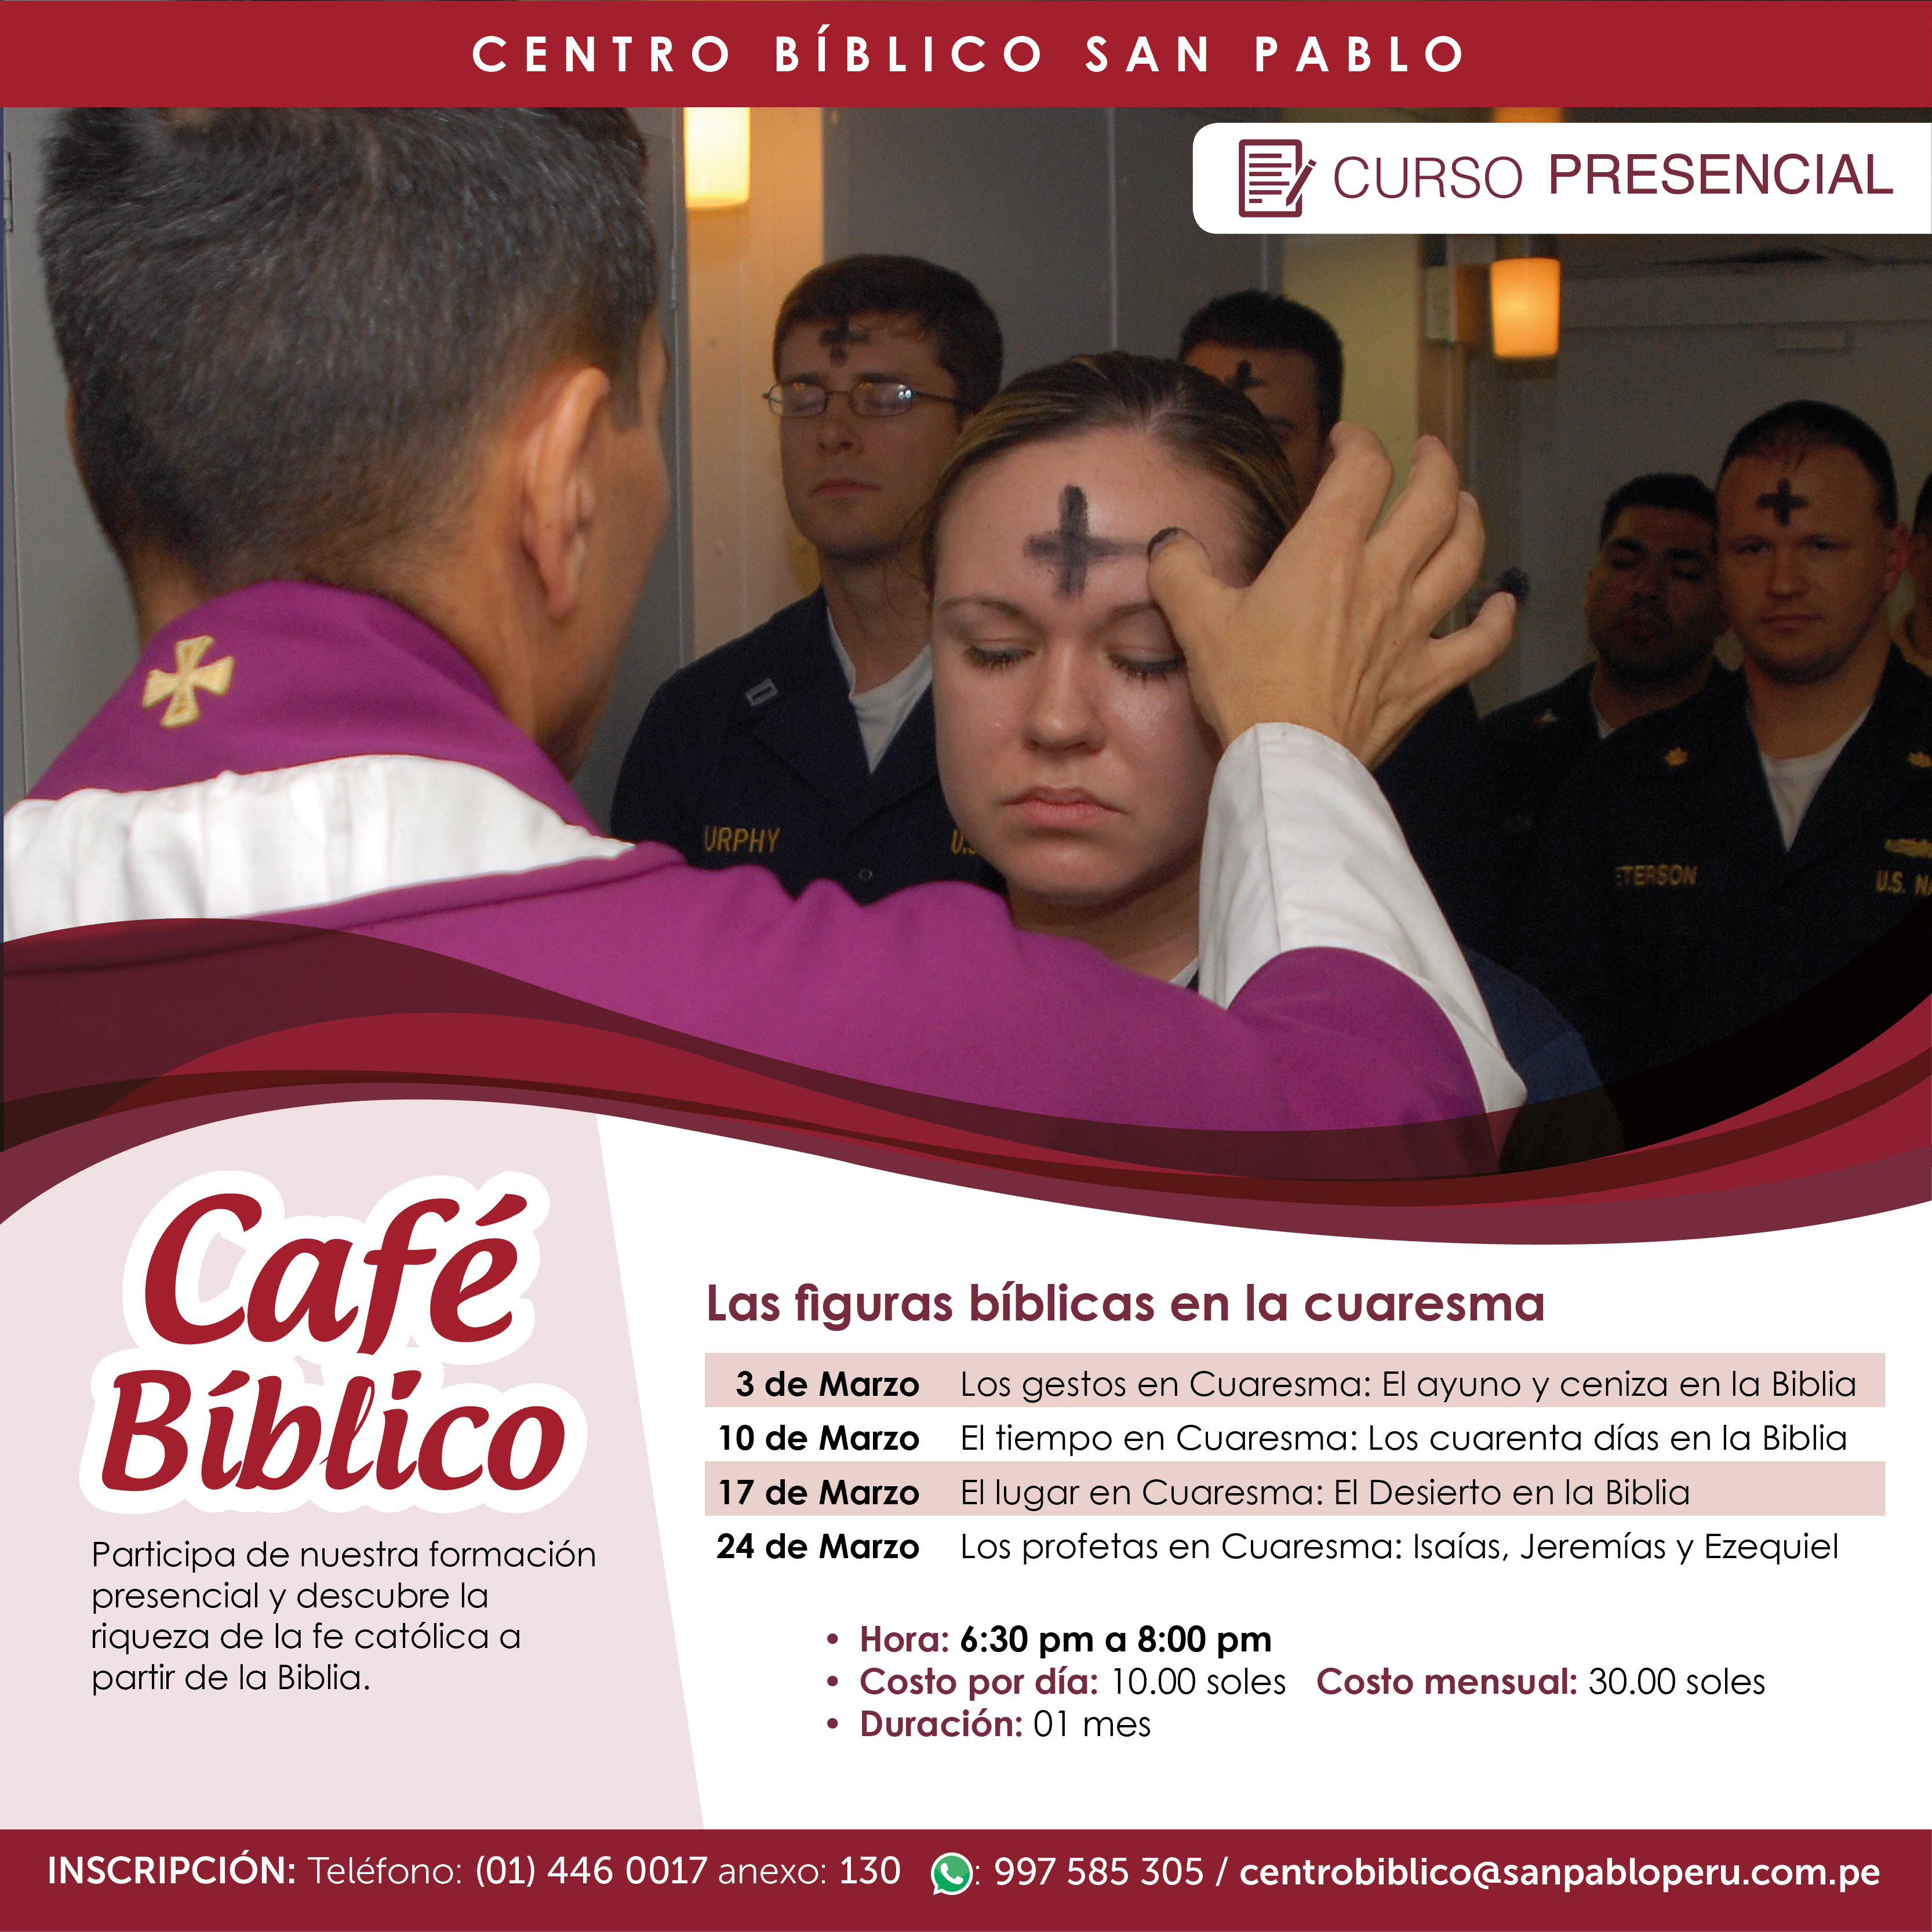 Café Bíblico: Las figuras bíblicas en la Cuaresma